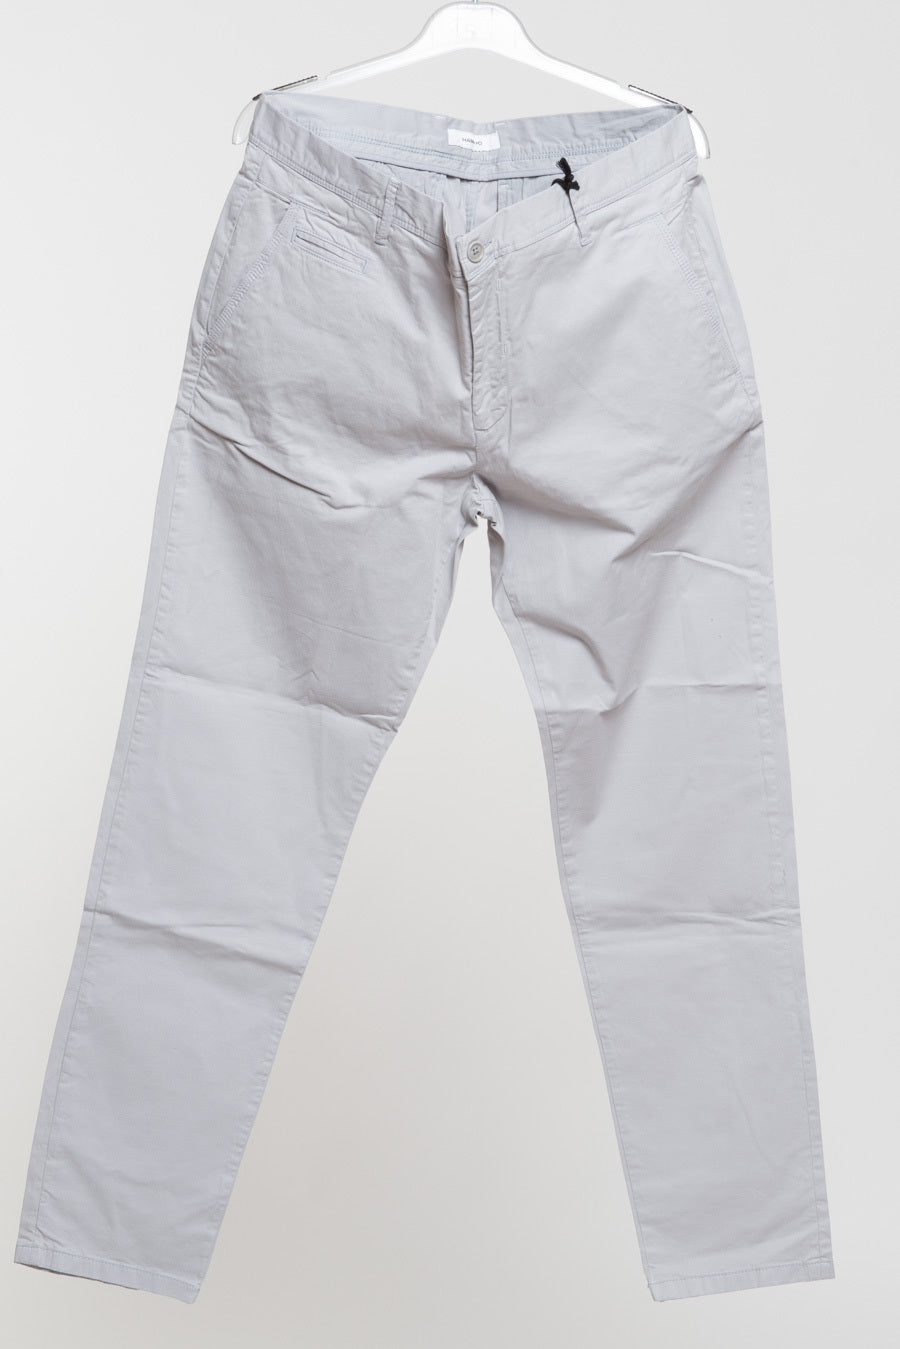 Pantalone chino grigio